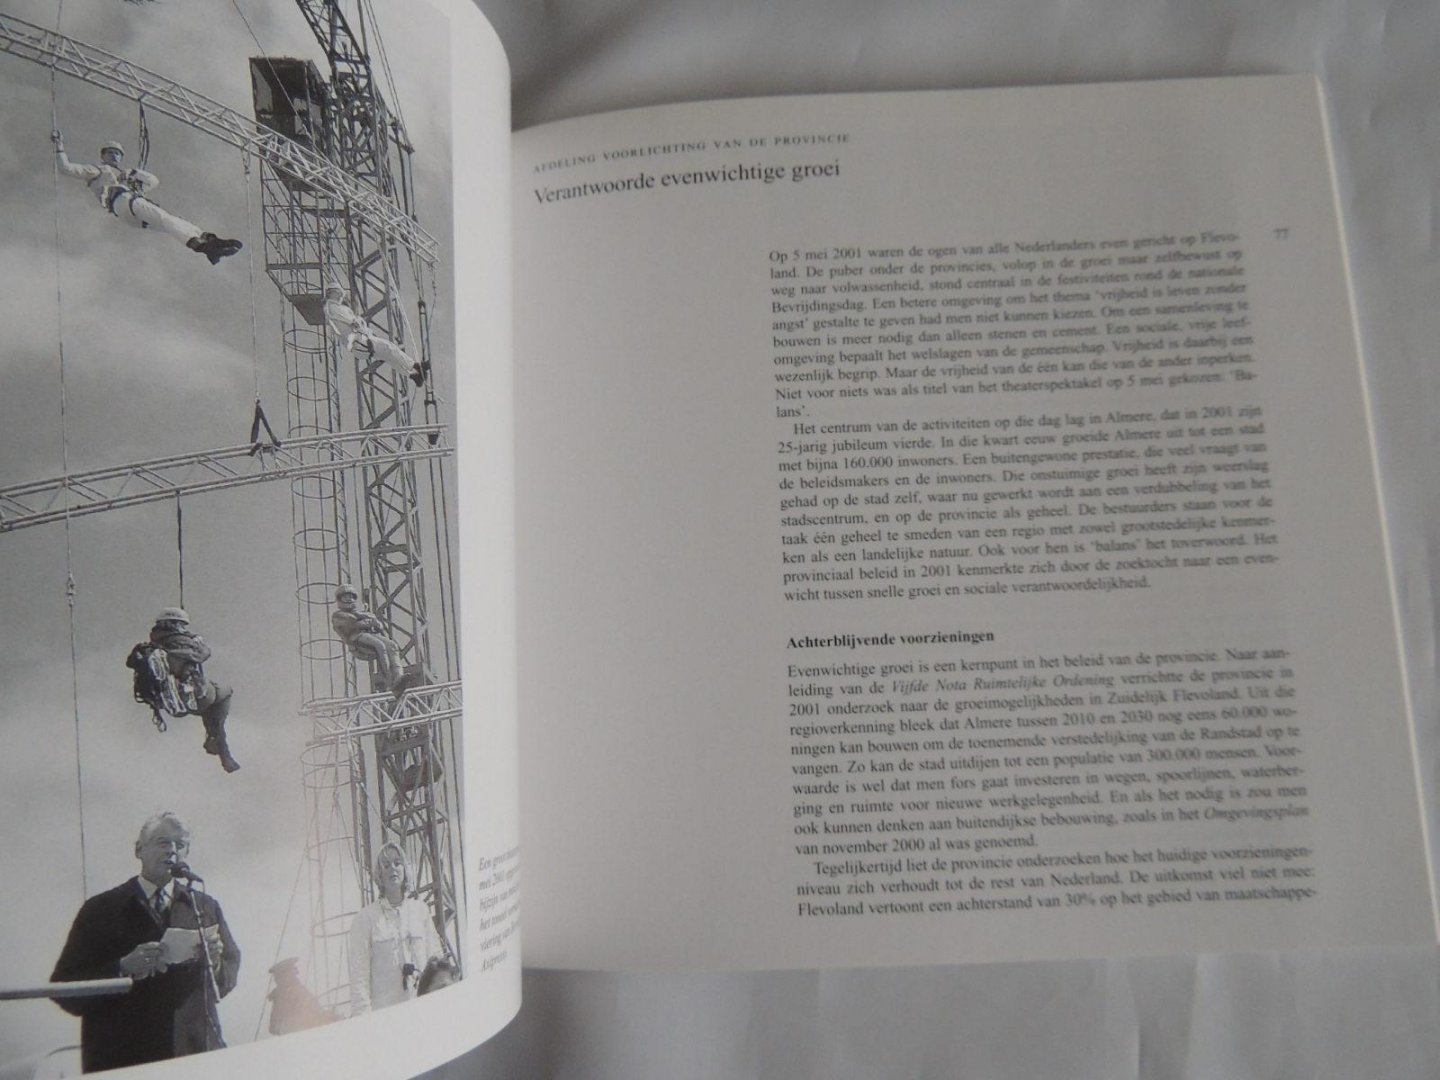 Dorleijn, Peter /// andre geurts ea. - Cultuur historisch jaarboek voor Flevoland 2002. Van horen zeggen.